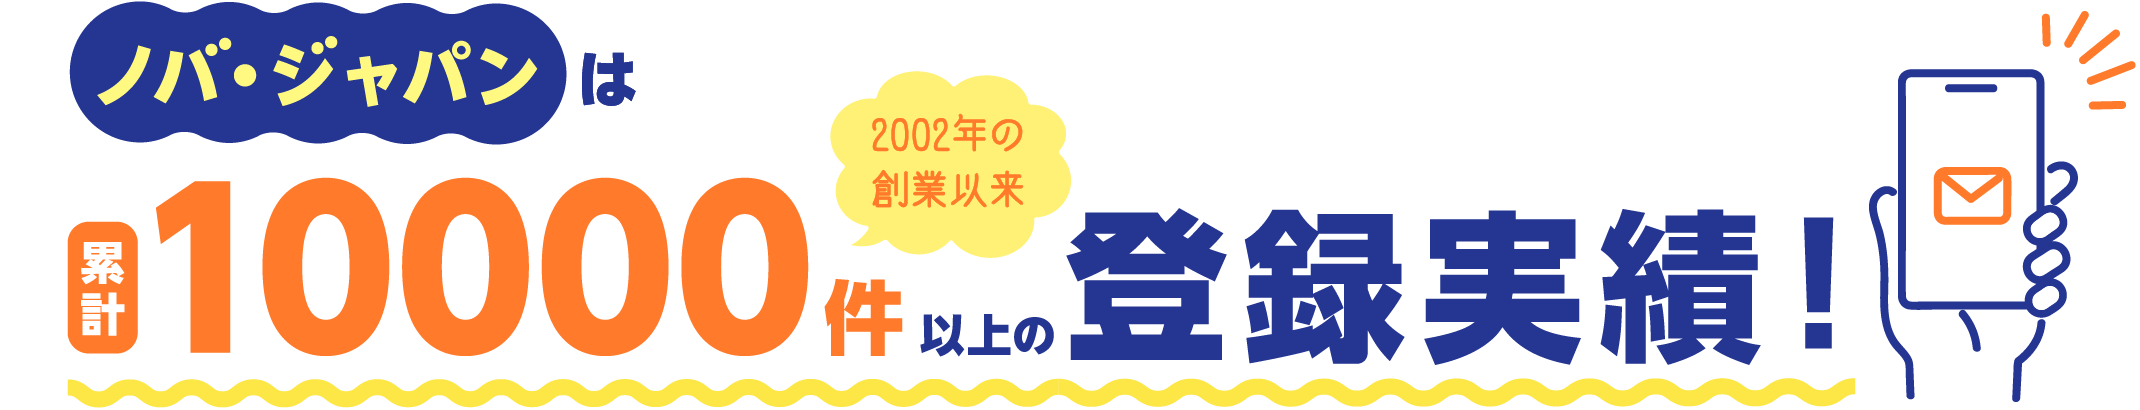 ノバ・ジャパンは1000件登録実績